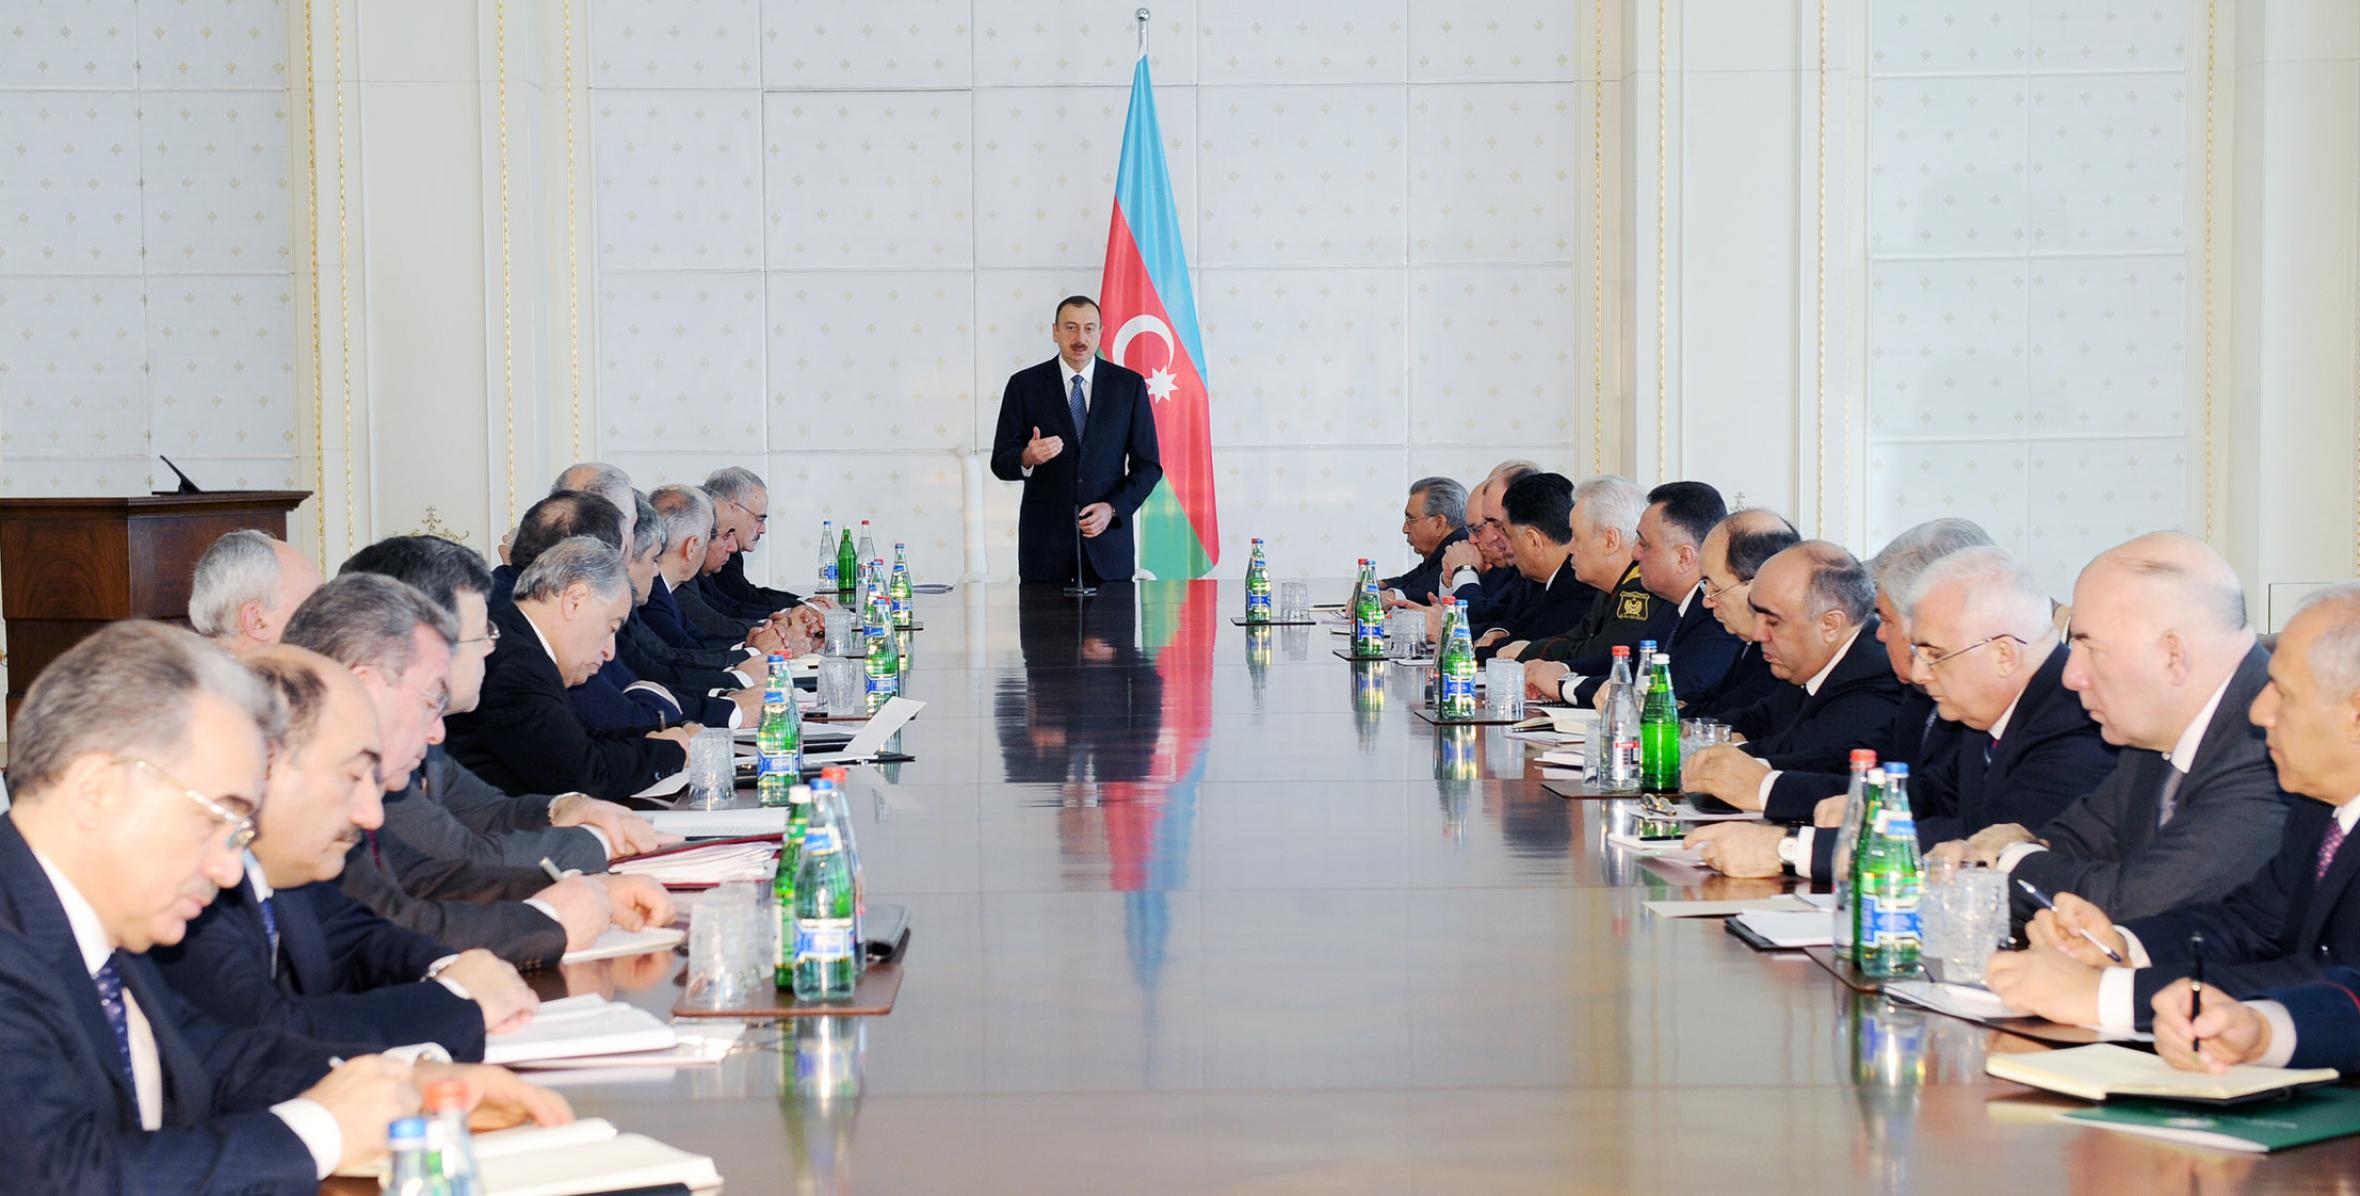 Вступительная речь Ильхама Алиева на заседание Кабинета Министров, посвященное итогам социально-экономического развития в первом квартале 2012 года и предстоящим задачам